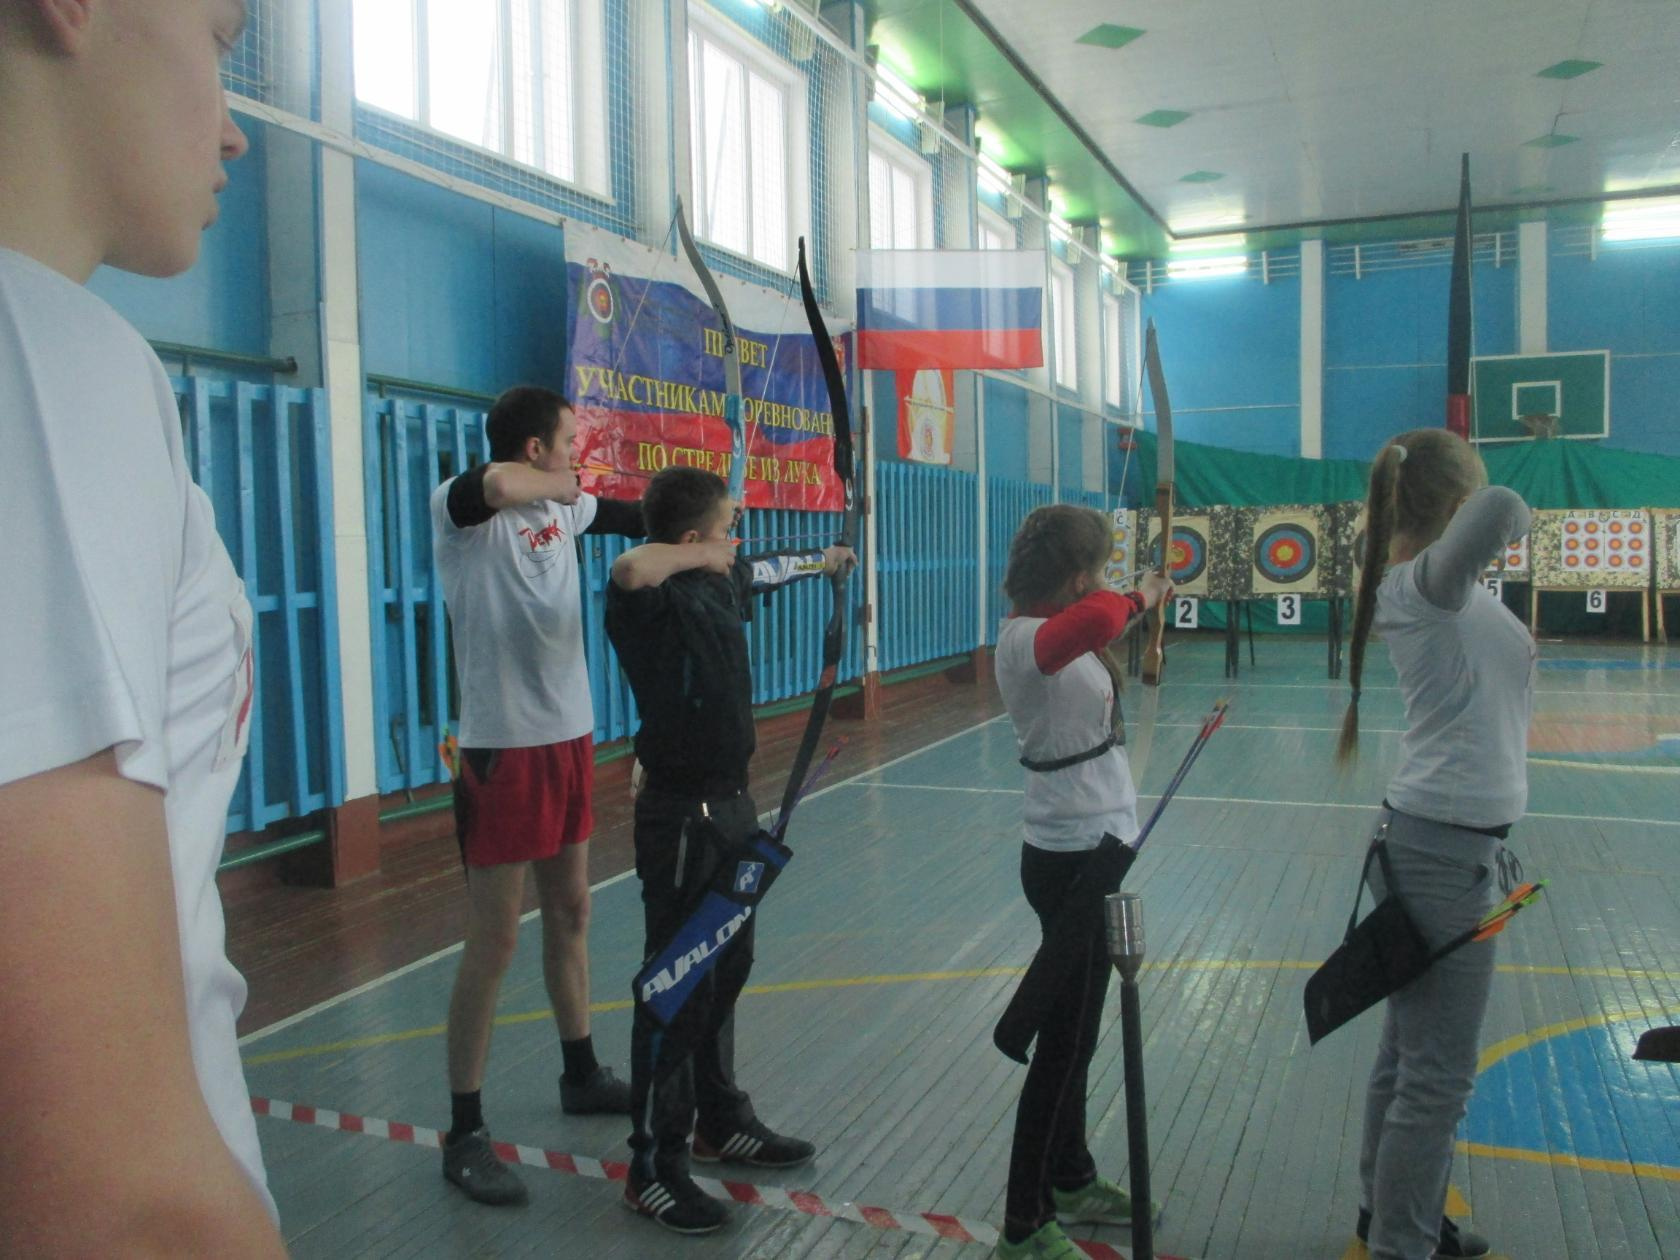 Валентина Абрамовна купила лук и стрелы — так появился стрелковый клуб